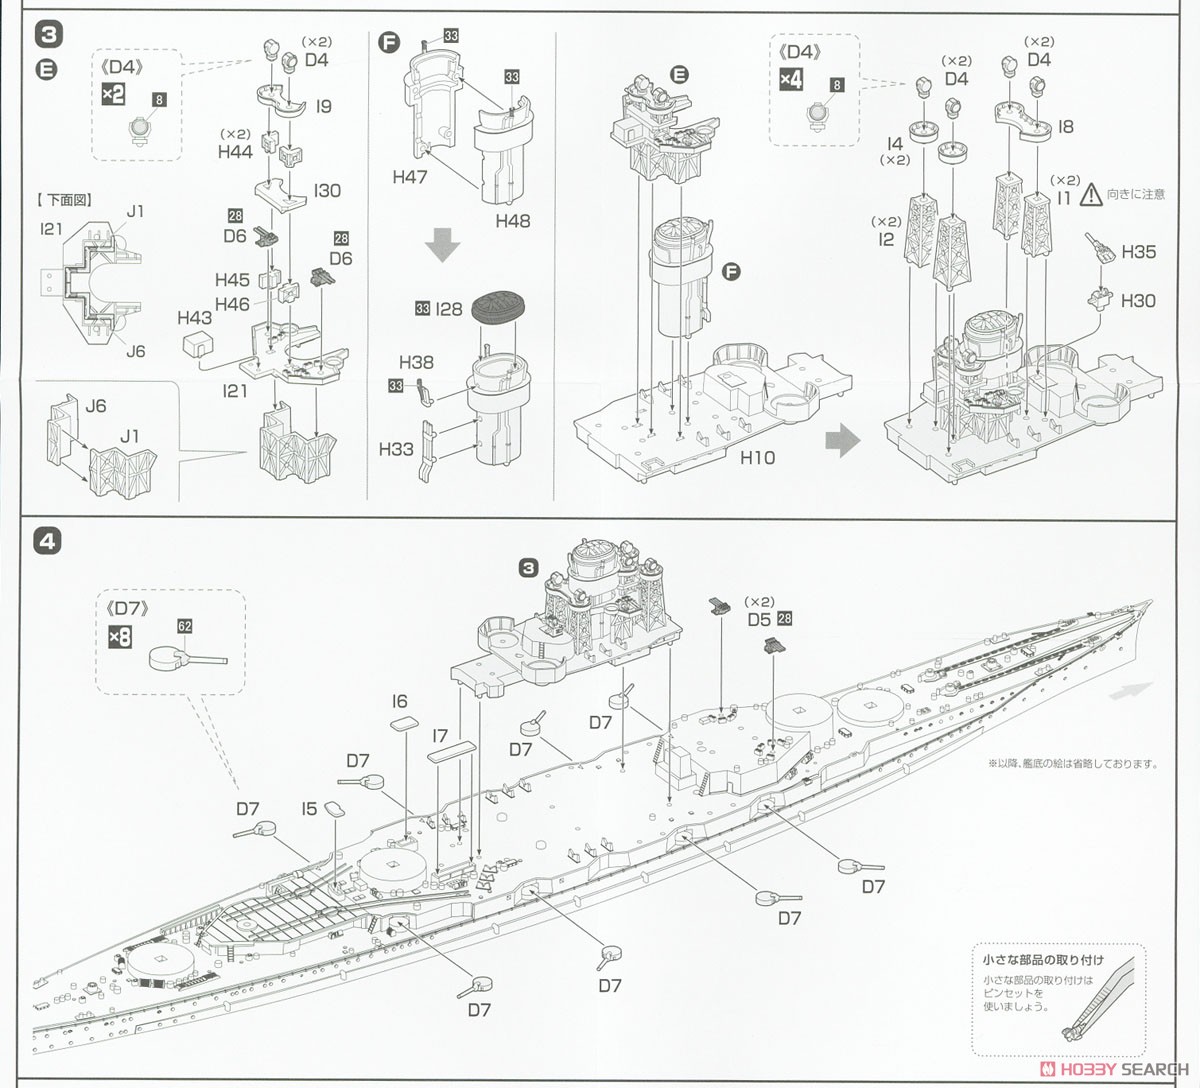 高速戦艦 榛名 フルハルモデル (プラモデル) 設計図2